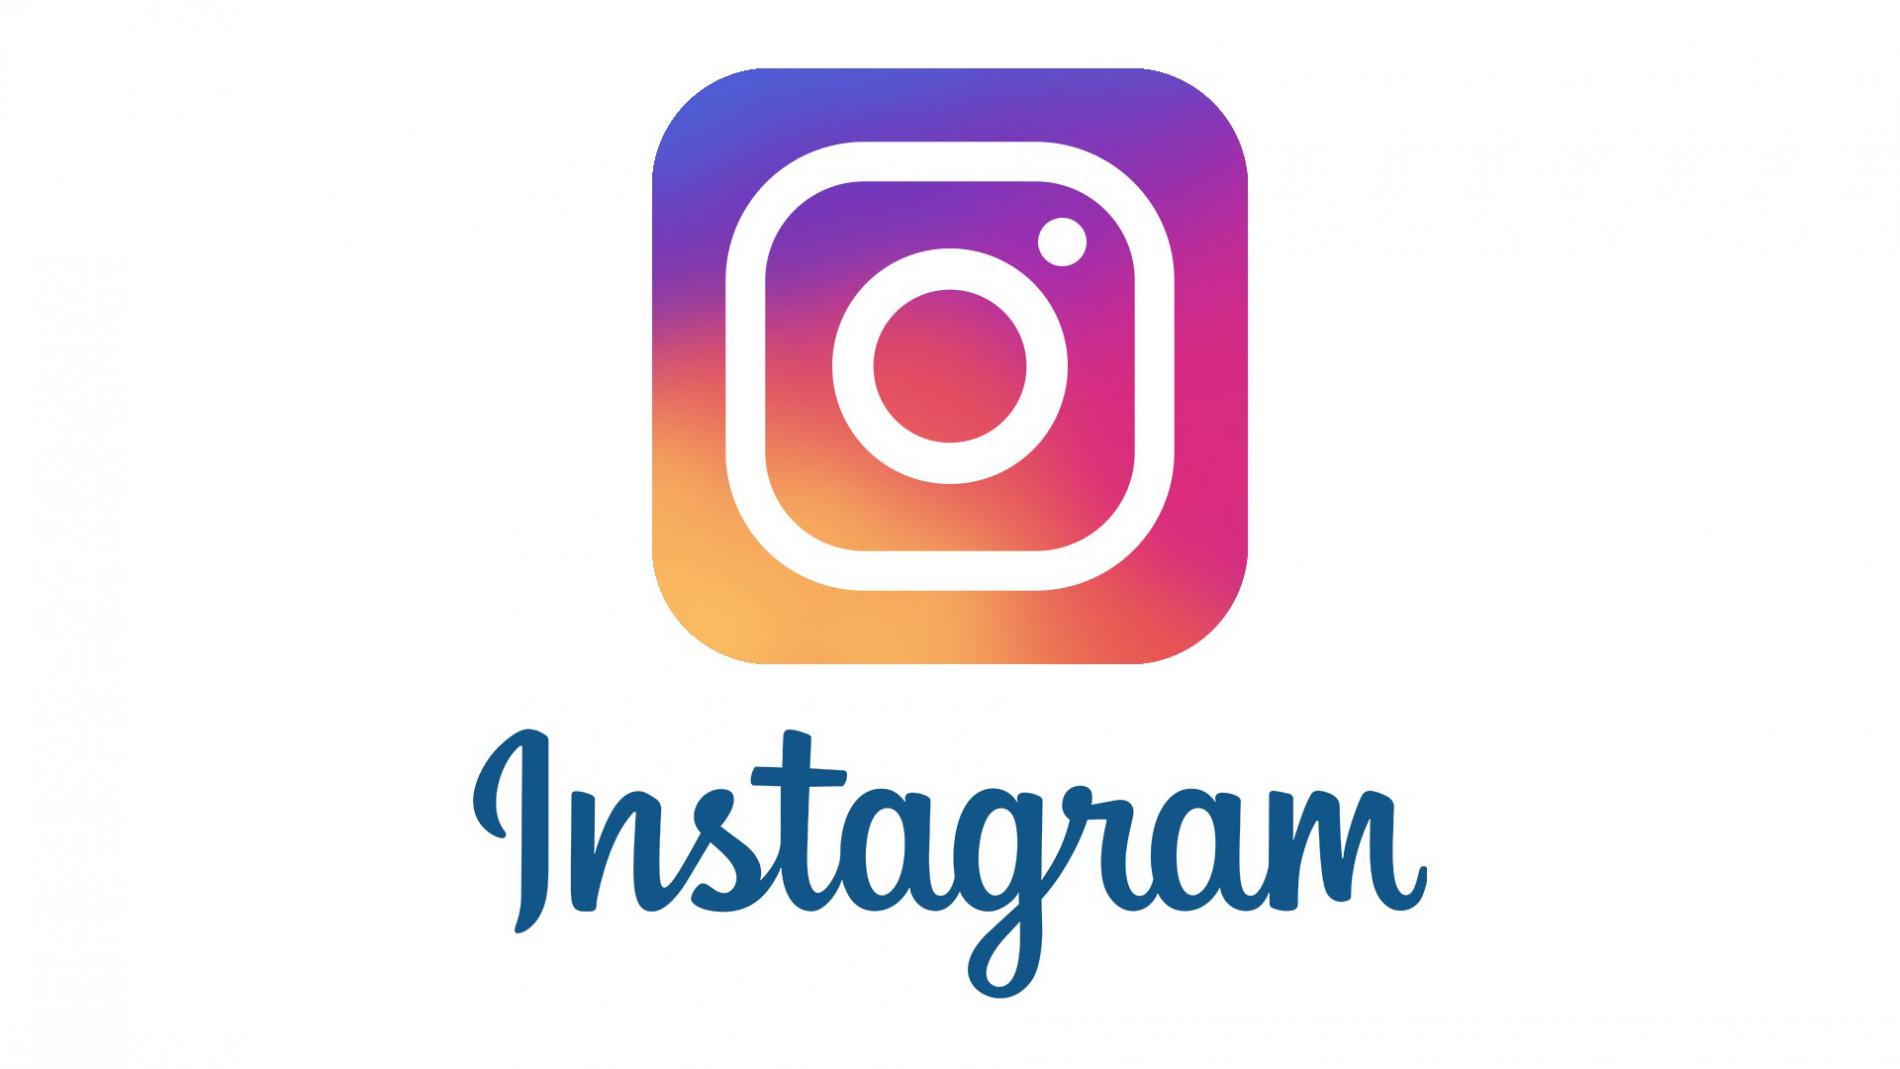 Instagram Sedang Uji Coba Tampilan dan Fitur Baru, Ada Video Pendek Ala TikTok